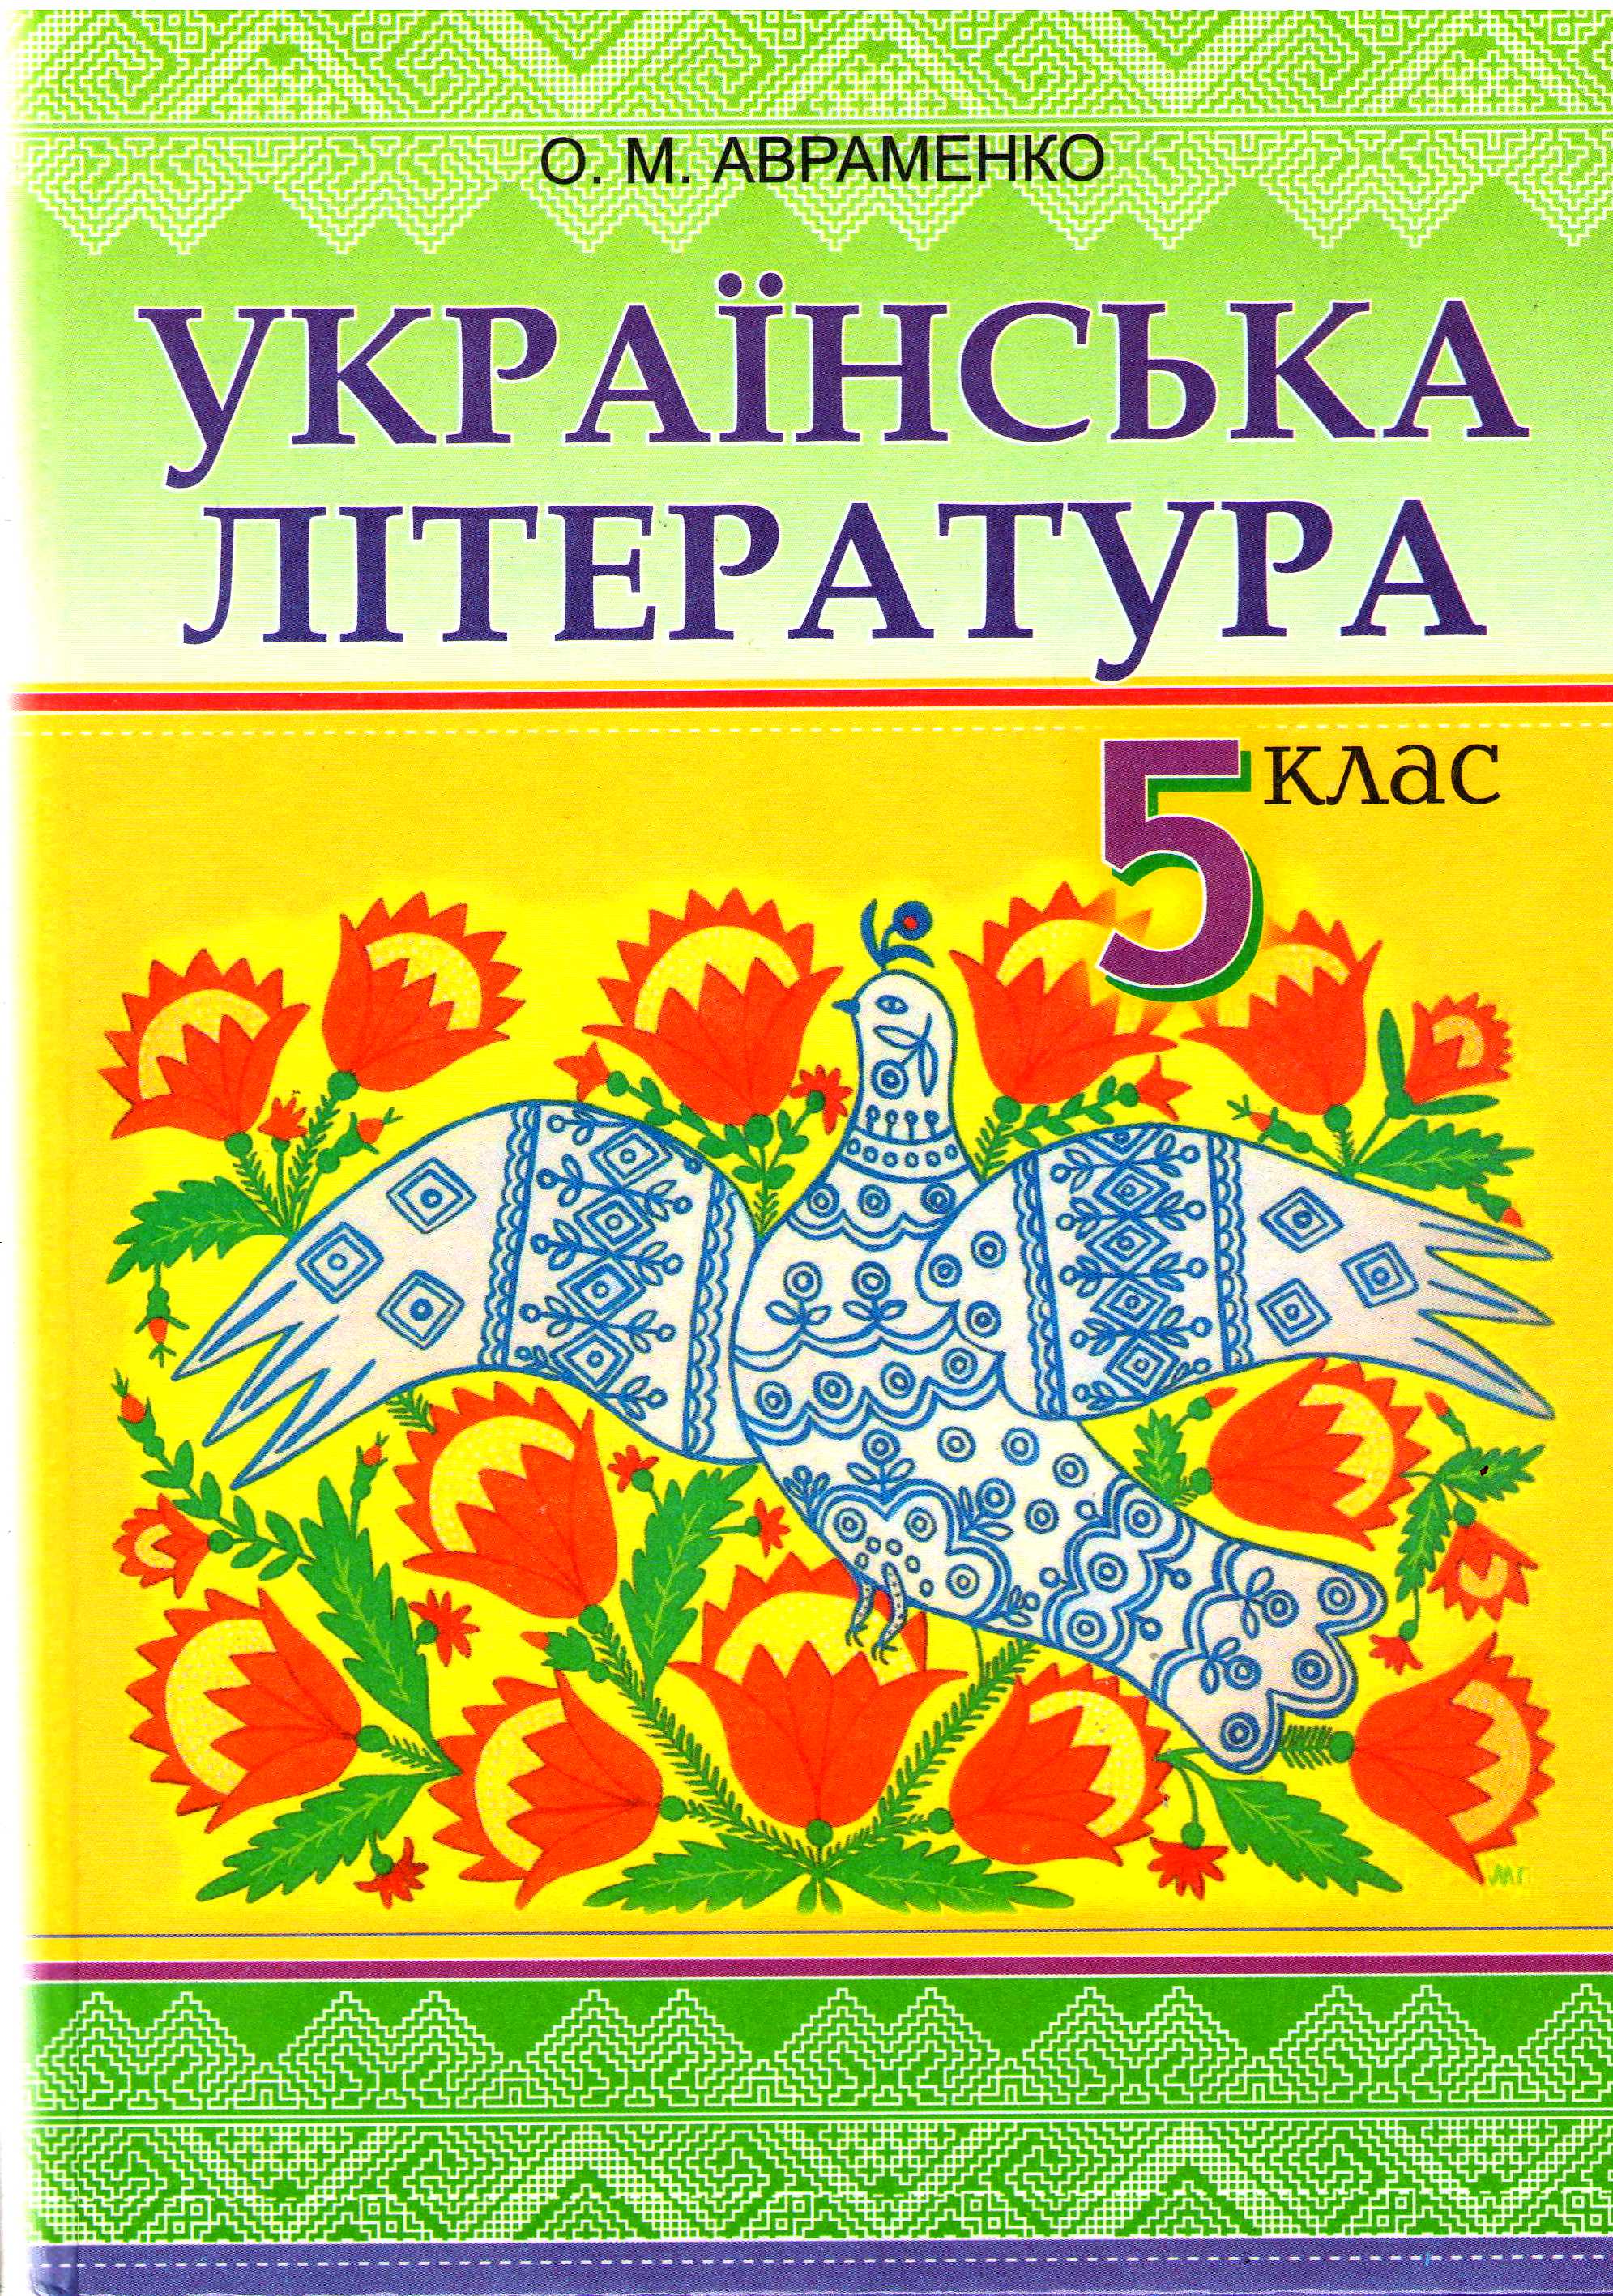 Учебники Для 5 Класса Бесплатно 2013 Год Украина